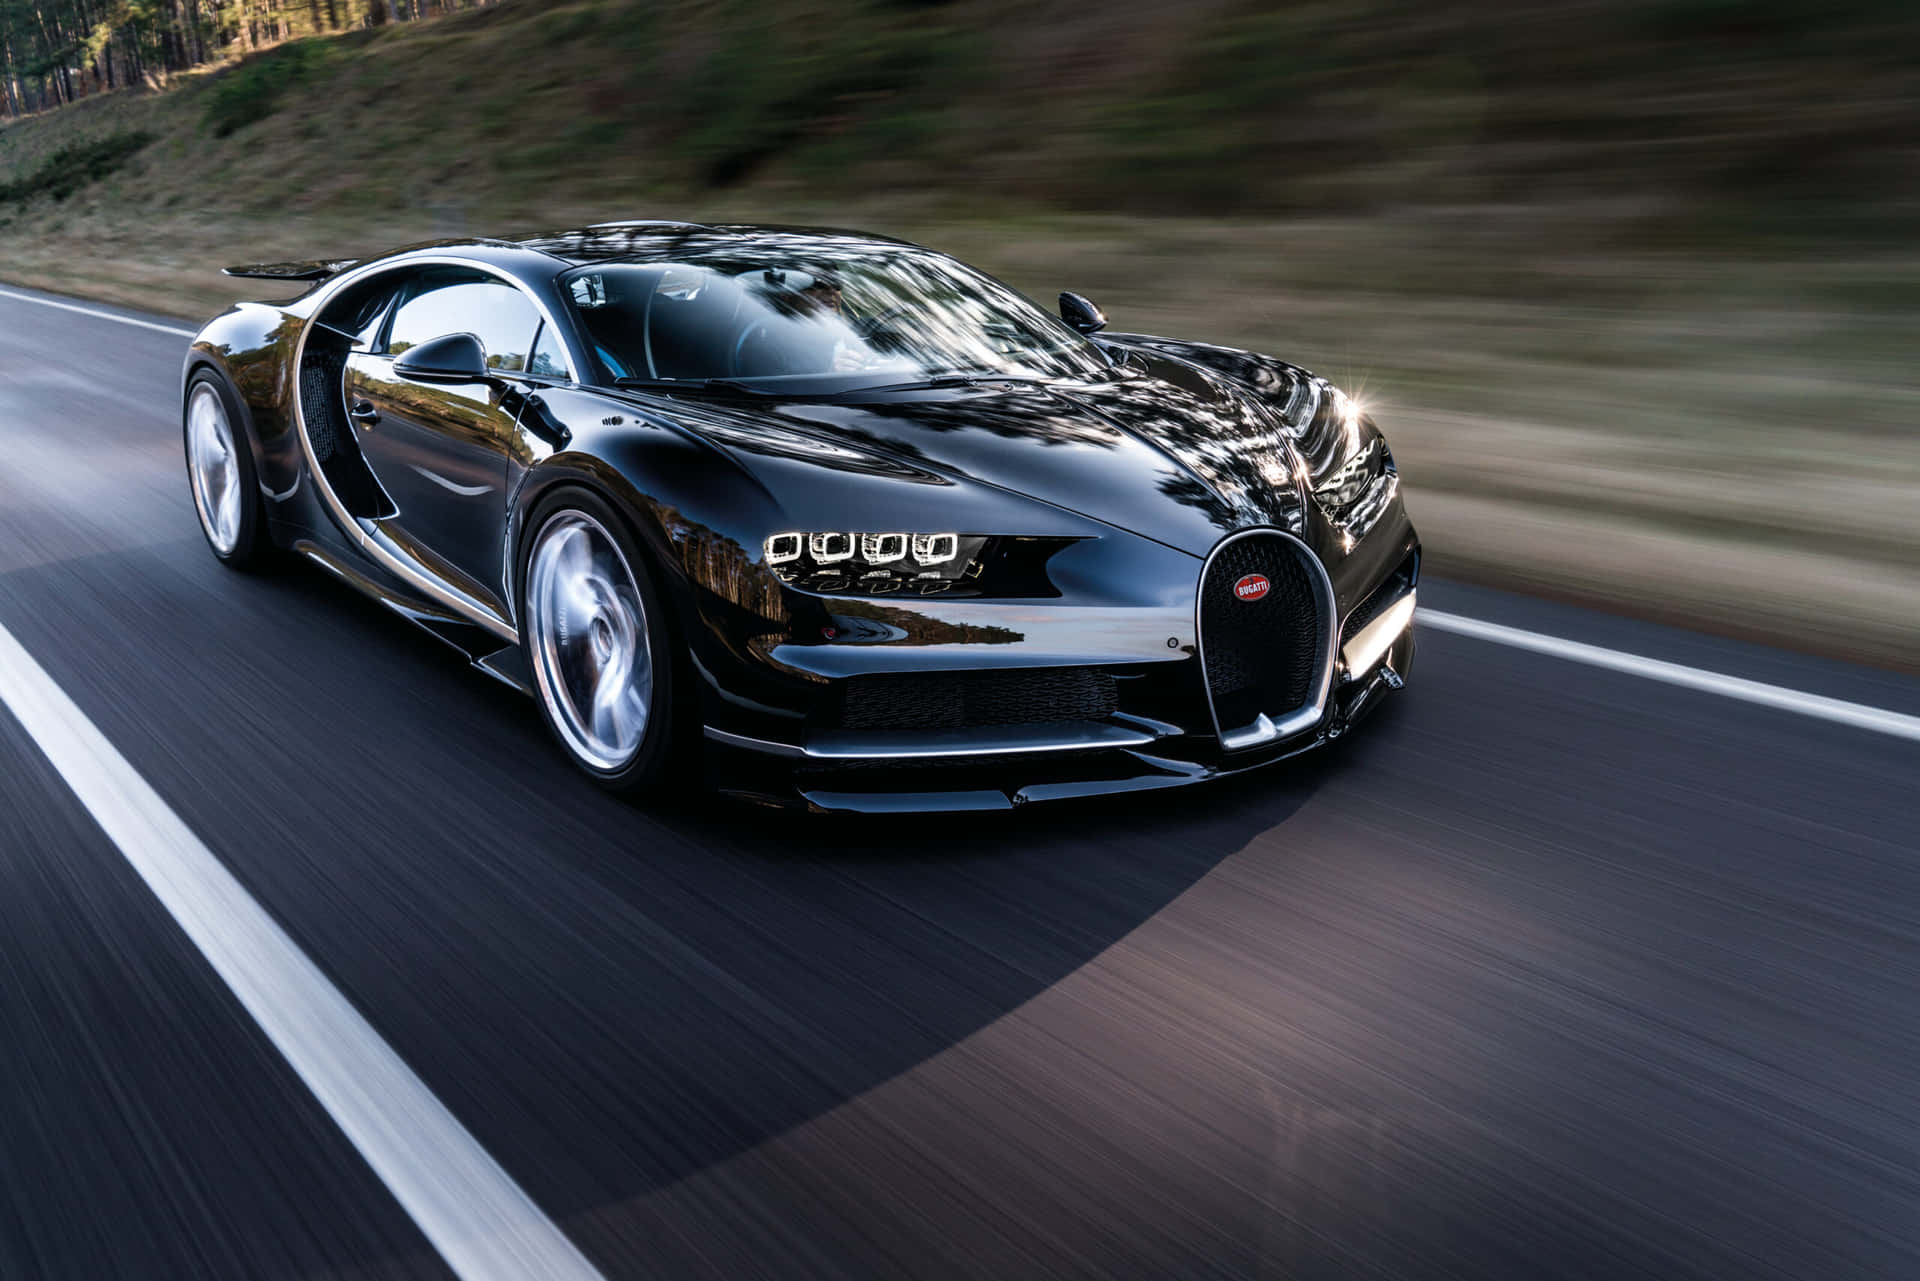 Velocitàe Stile Gemellati Nella Lussuosa Bugatti